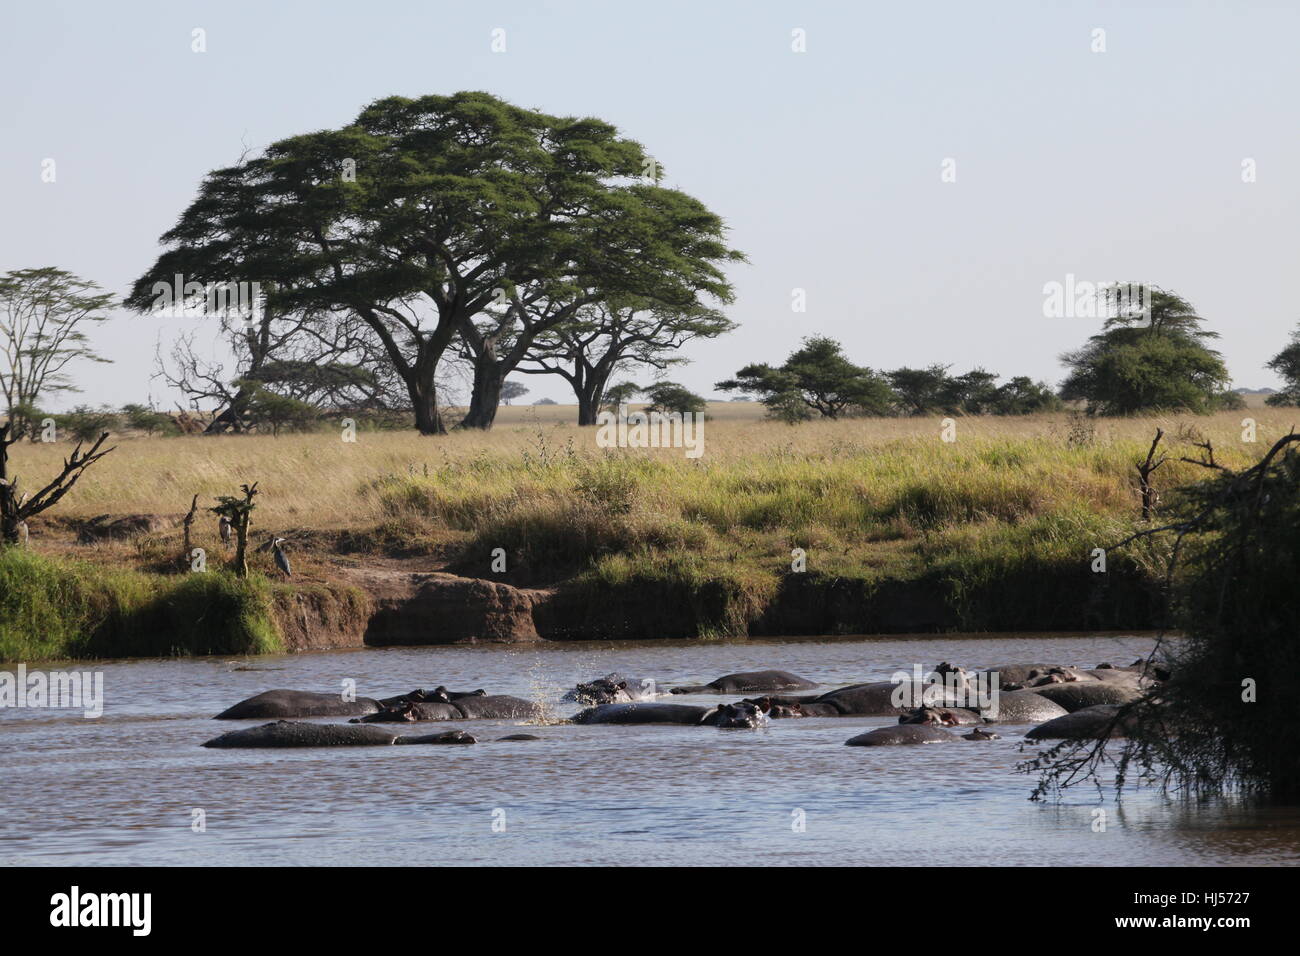 safari, tanzania, safari, tanzania, nilpferd, flusspferd, hippopotamus Stock Photo